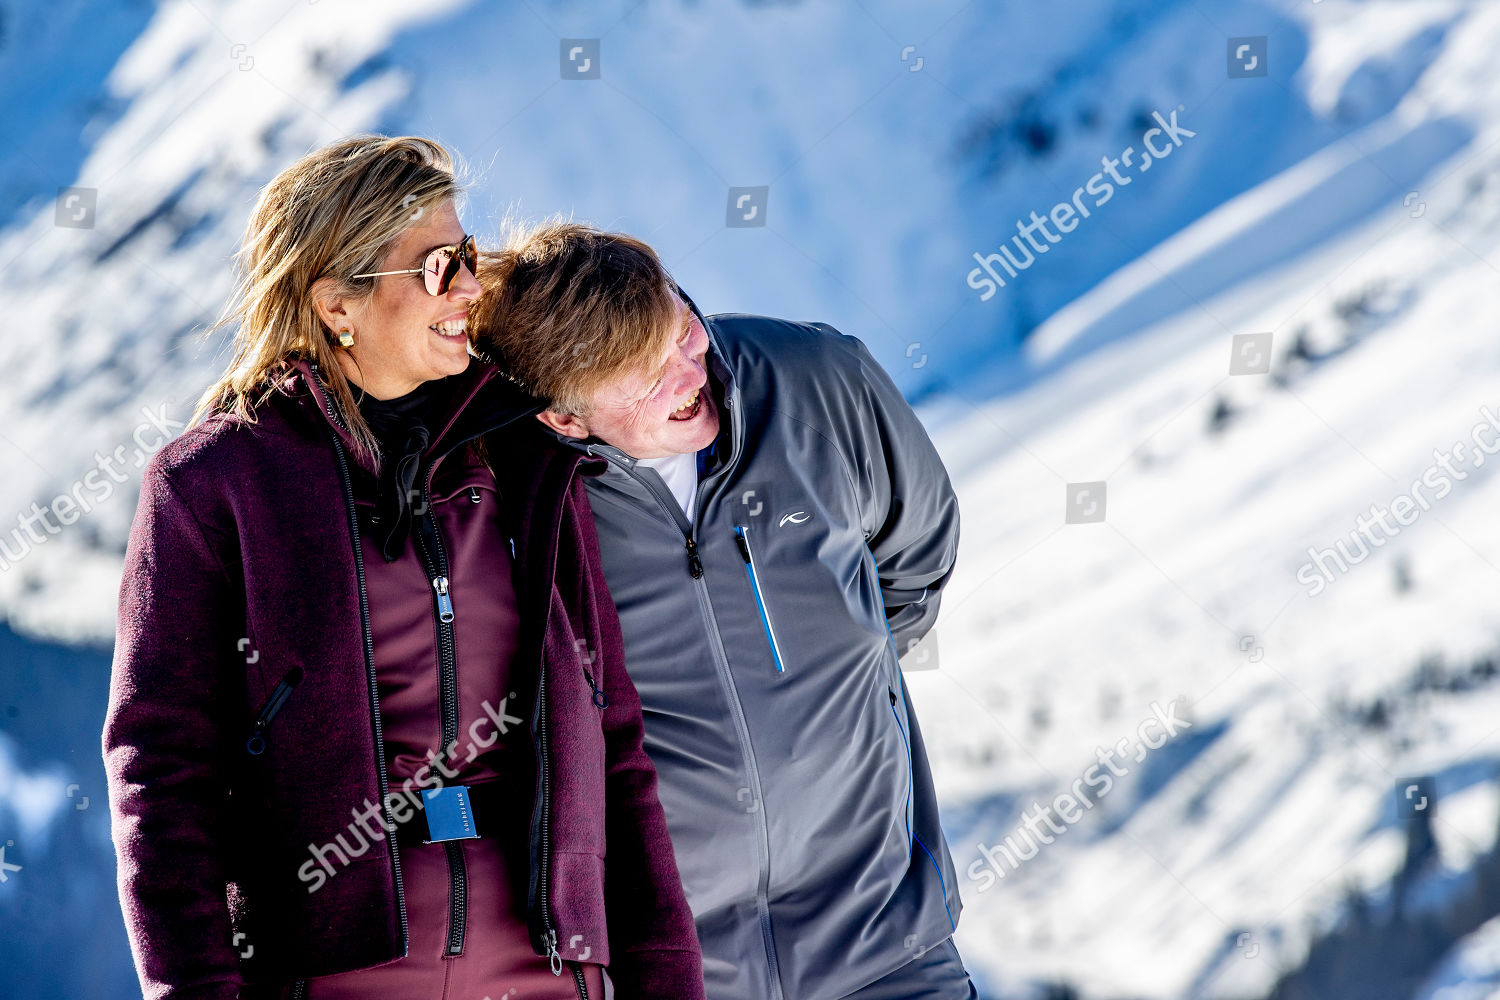 dutch-royals-winter-holiday-photocall-lech-austria-shutterstock-editorial-10118992d.jpg